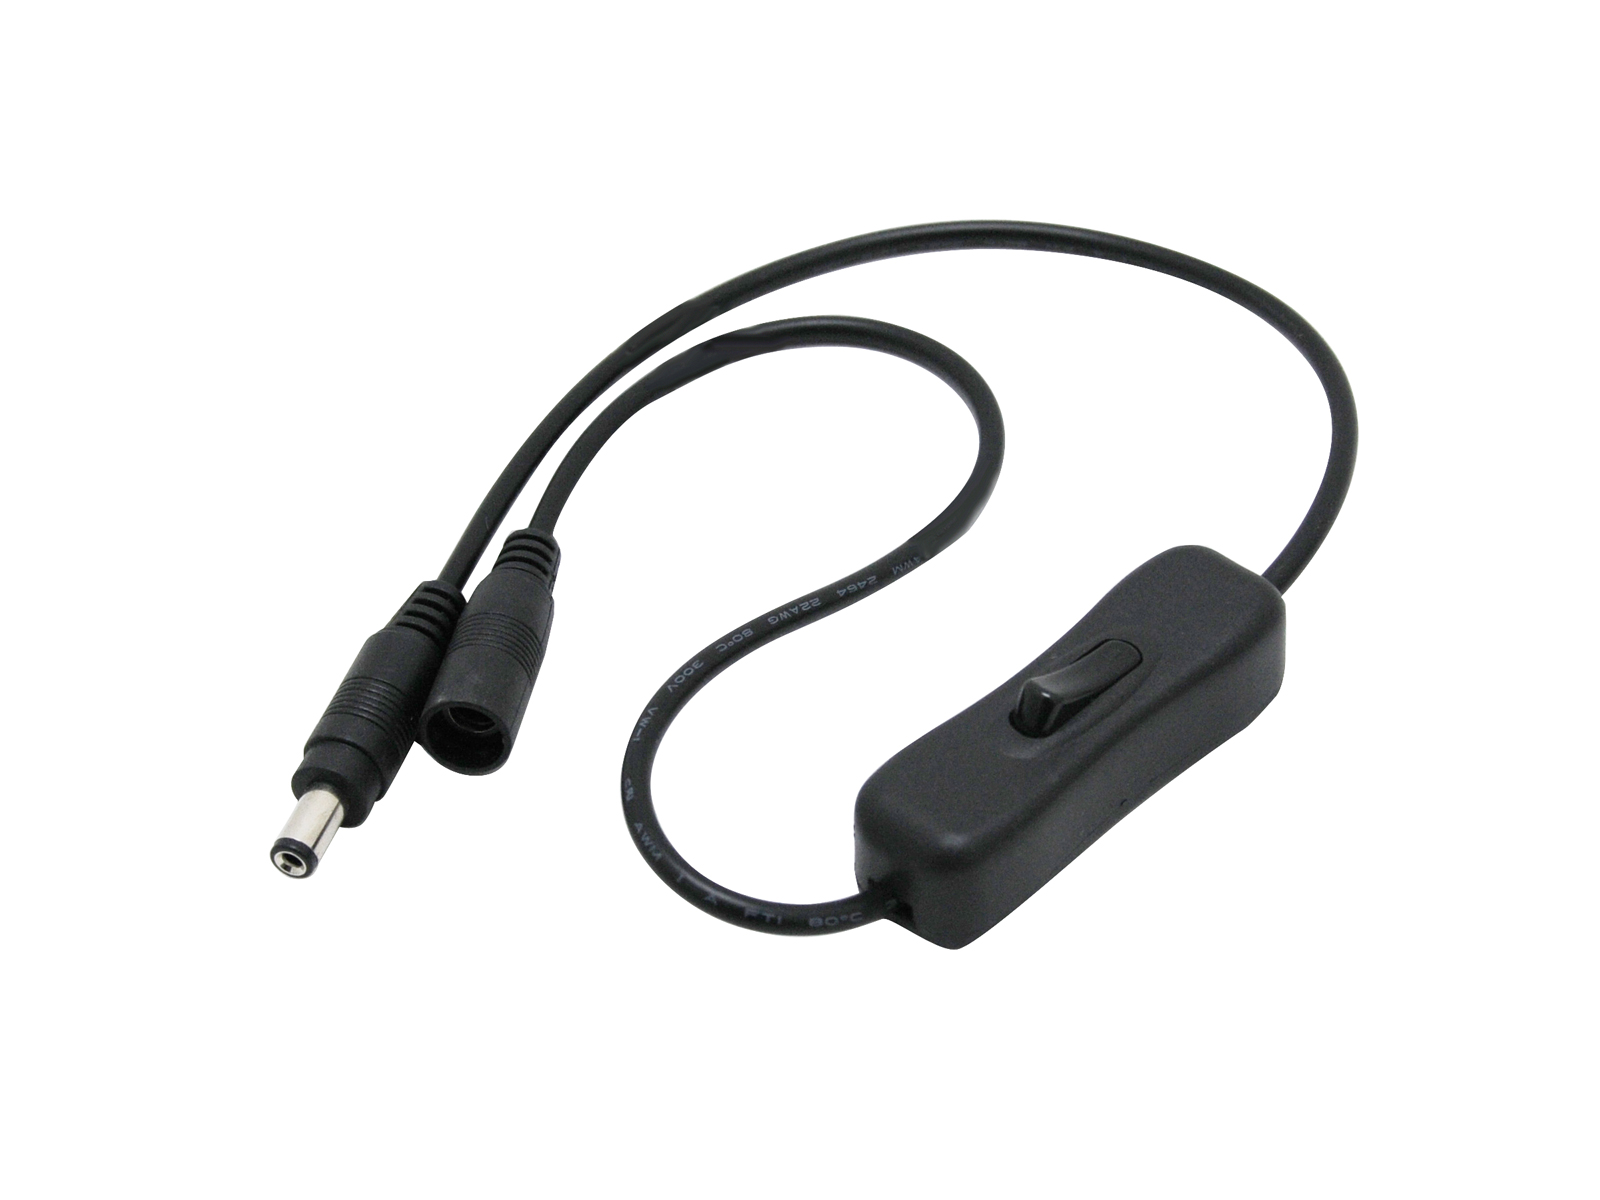 Kabel mit Schalter DC Stecker / DC Buchse schwarz 5,5/2,1mm kaufen | PUR-LED